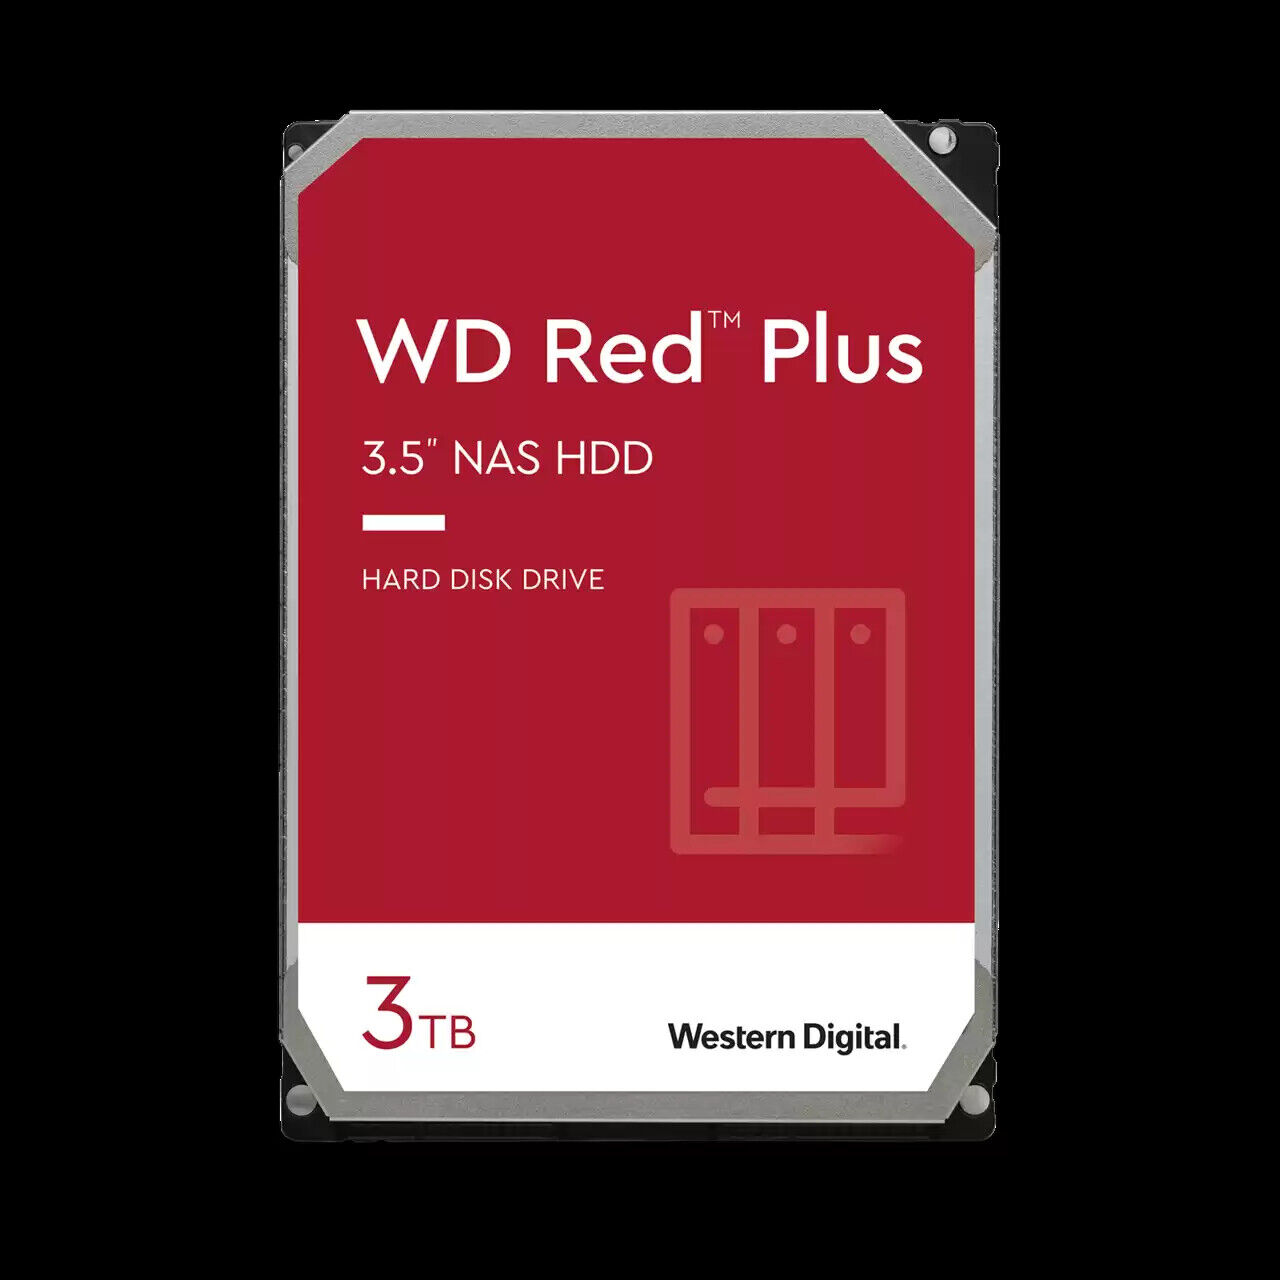 Western Digital 3TB WD Red Plus NAS HDD, Internal 3.5'' Hard Drive - WD30EFPX